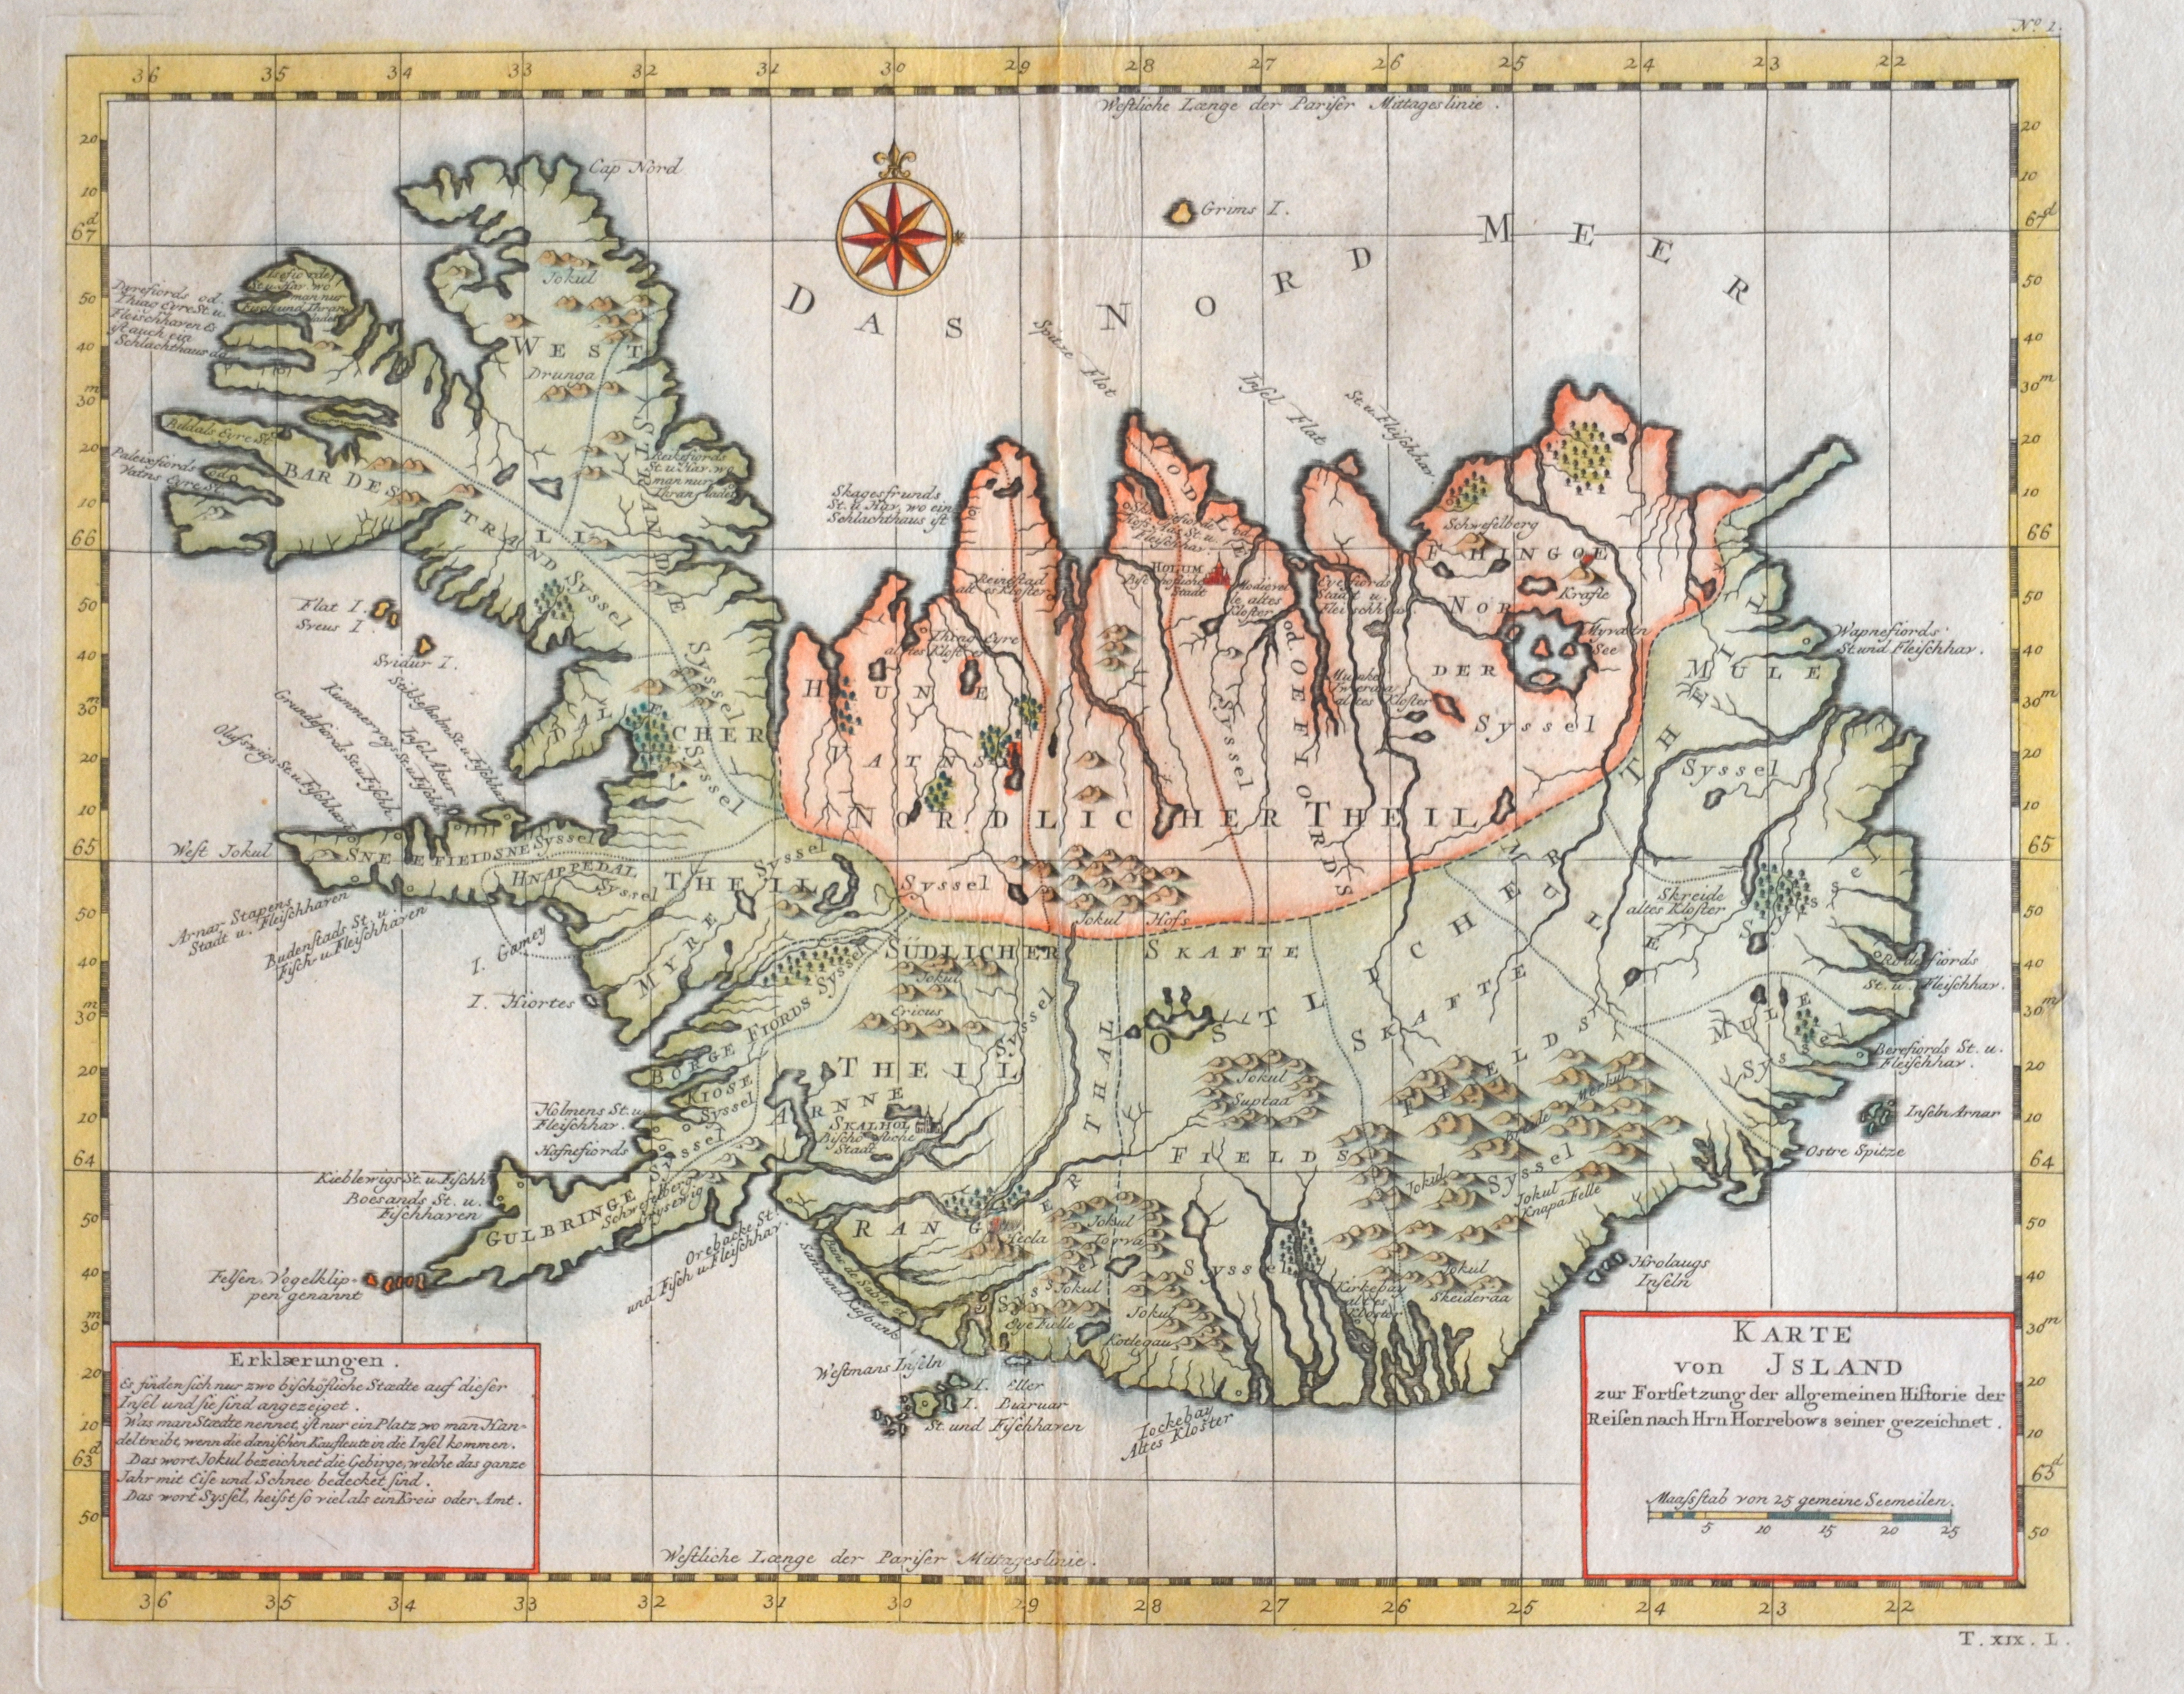 Bellin  Karte von Jsland zur Fortsetzung der allgemeinen Historie der Reisen nach Hrn Horrebows seiner gezeichnet.l